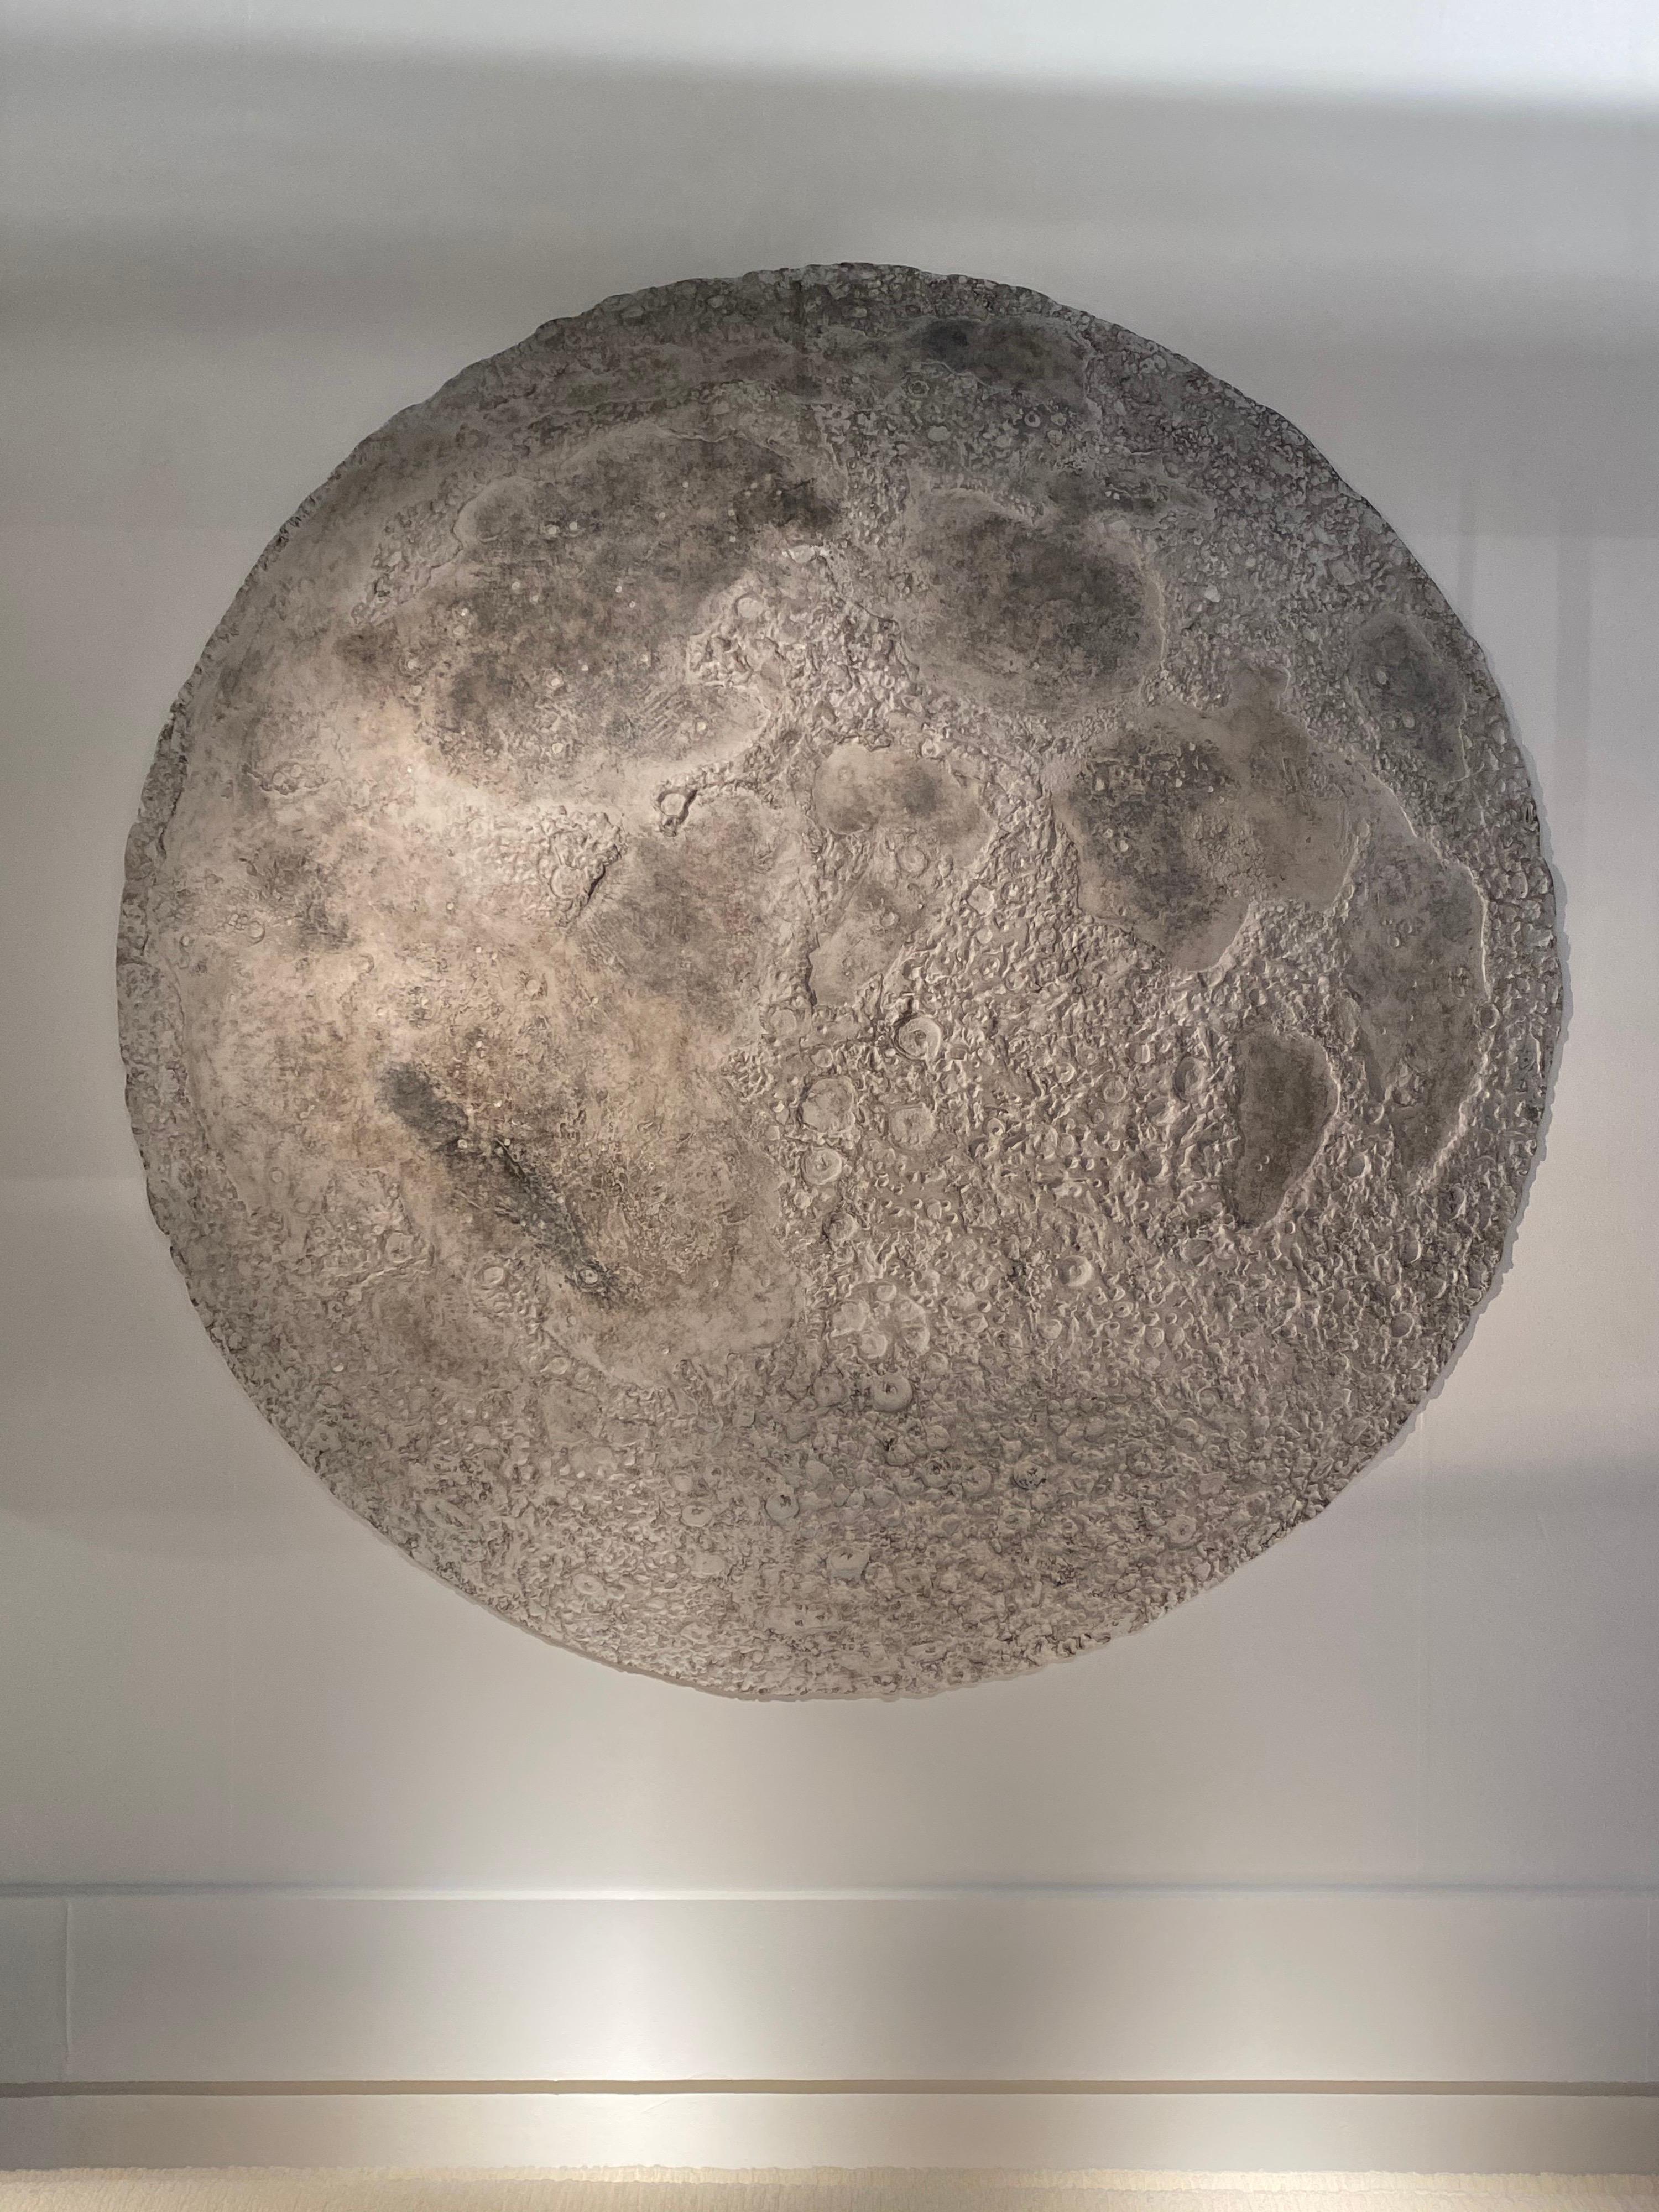  Mond-Skulptur an der Wand des französischen Künstlers Michel Pichard
Ausgabe 4/20
Maße: größere Abmessungen 150 cm Durchmesser bei 20 cm Tiefe.
